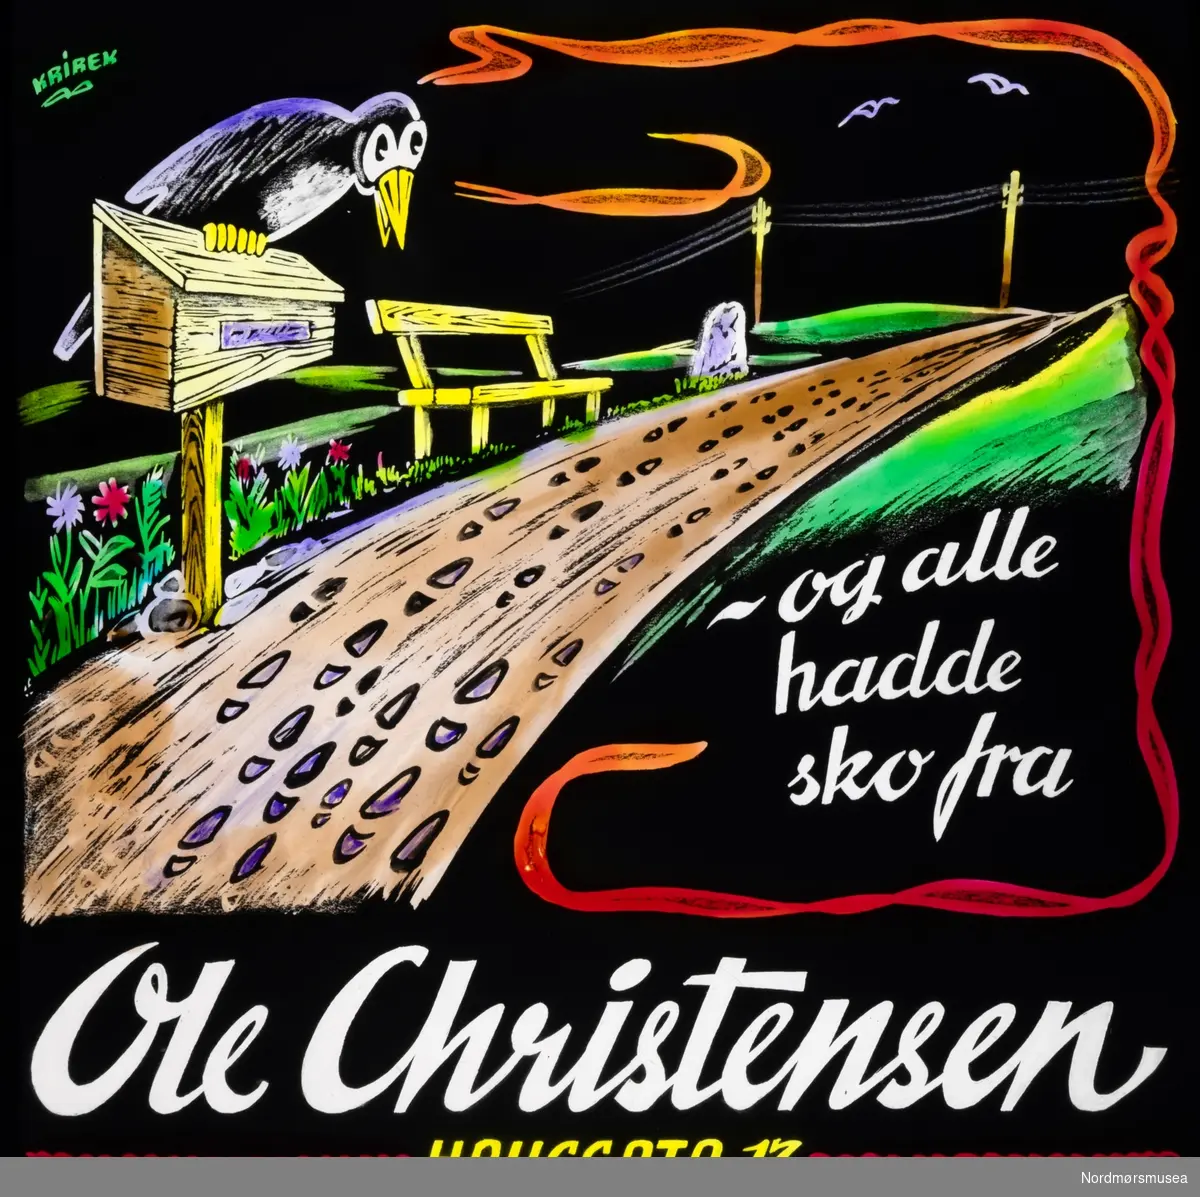 Ole Christensen. Kinoreklame fra Kristiansund, hovedsaklig fra perioden 1950 til 1980.